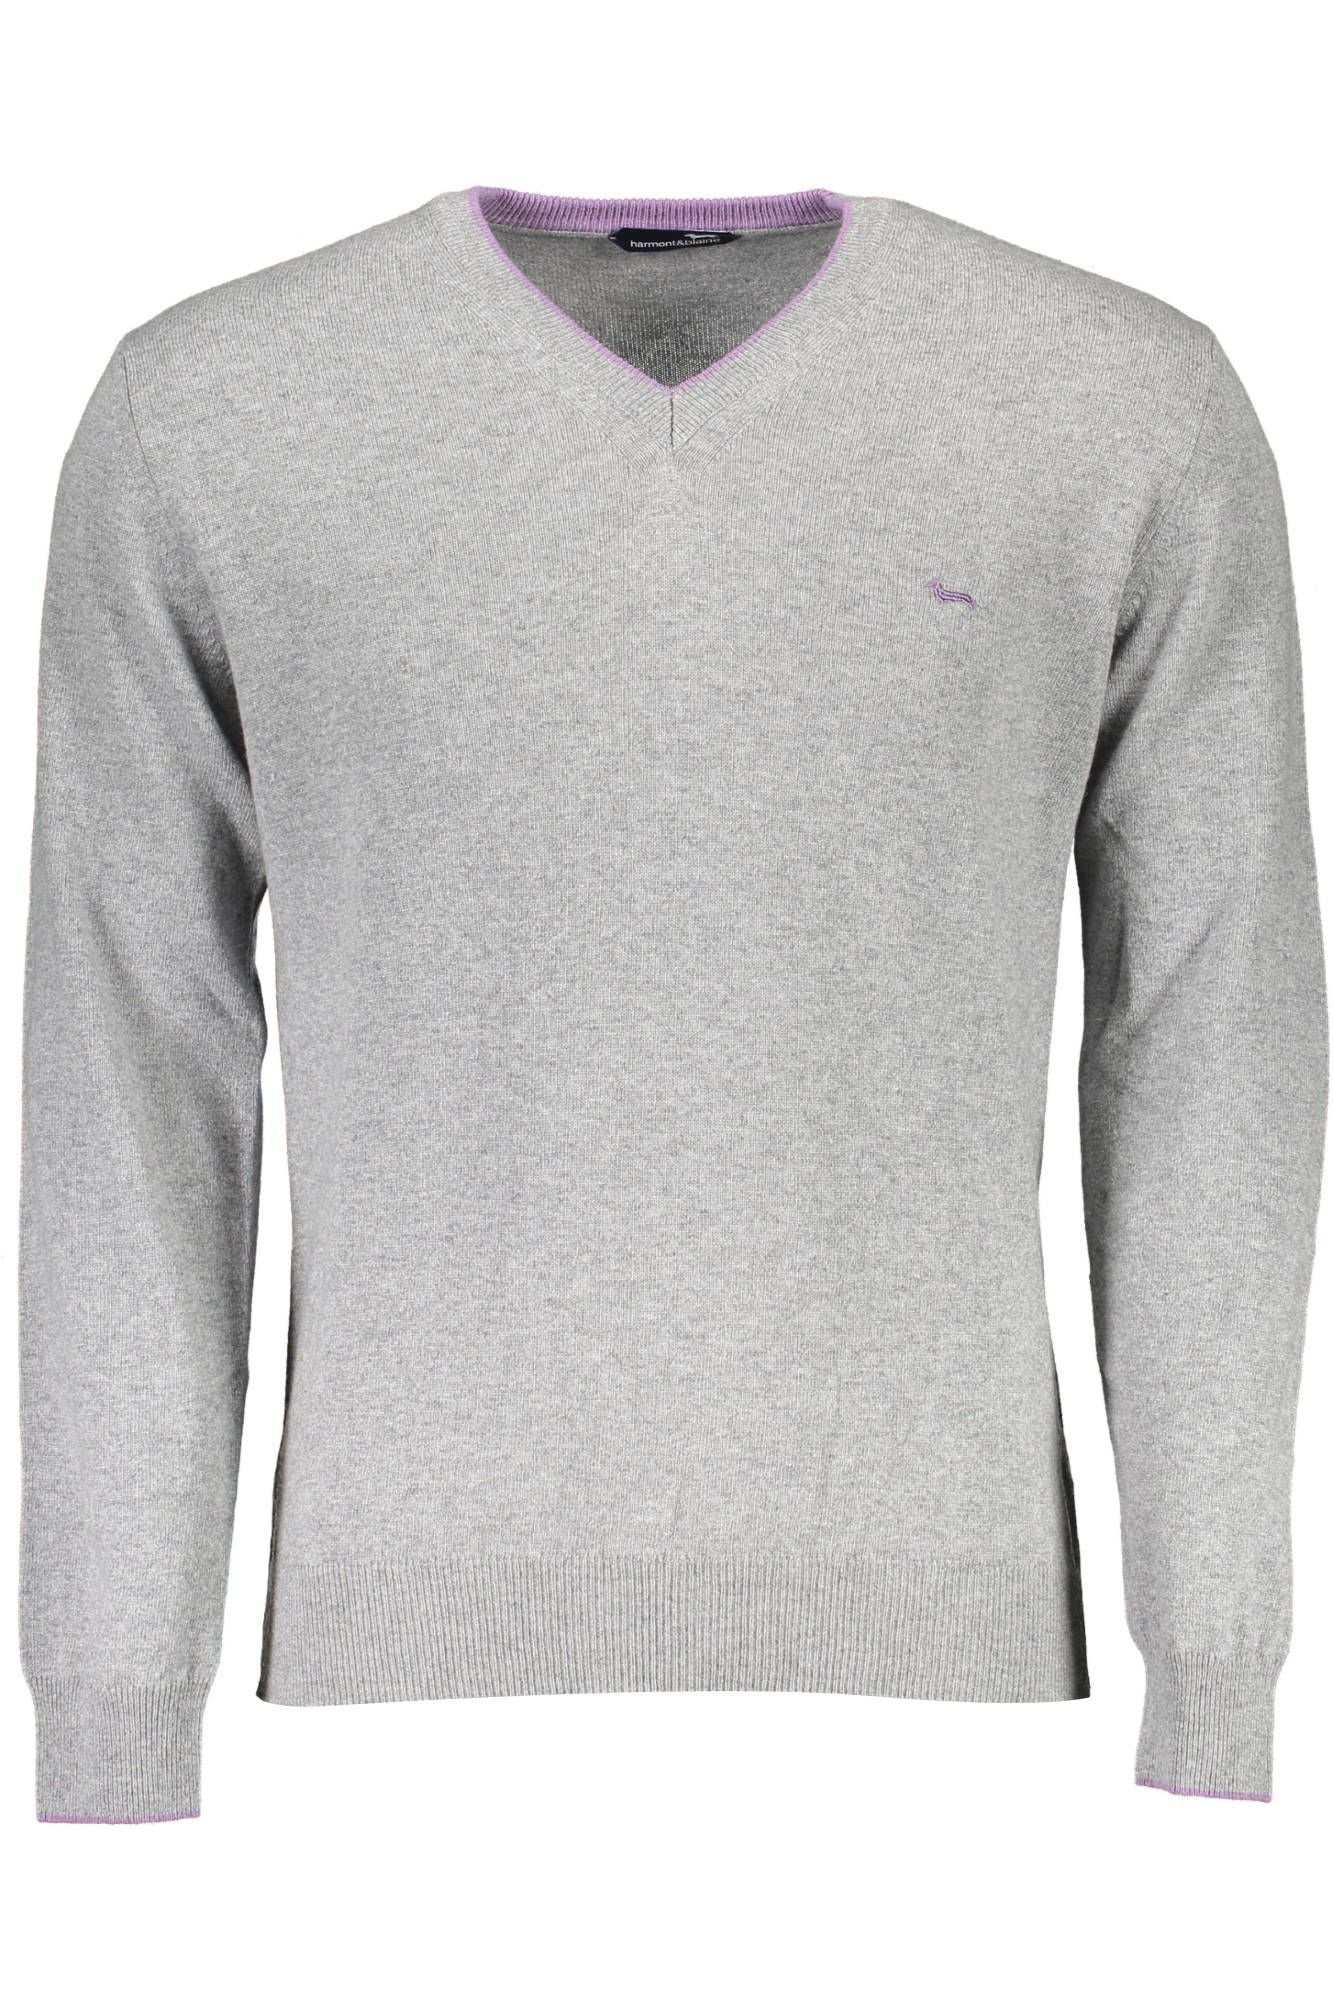 Harmont & Blaine Men's Gray Wool V-neck Sweater